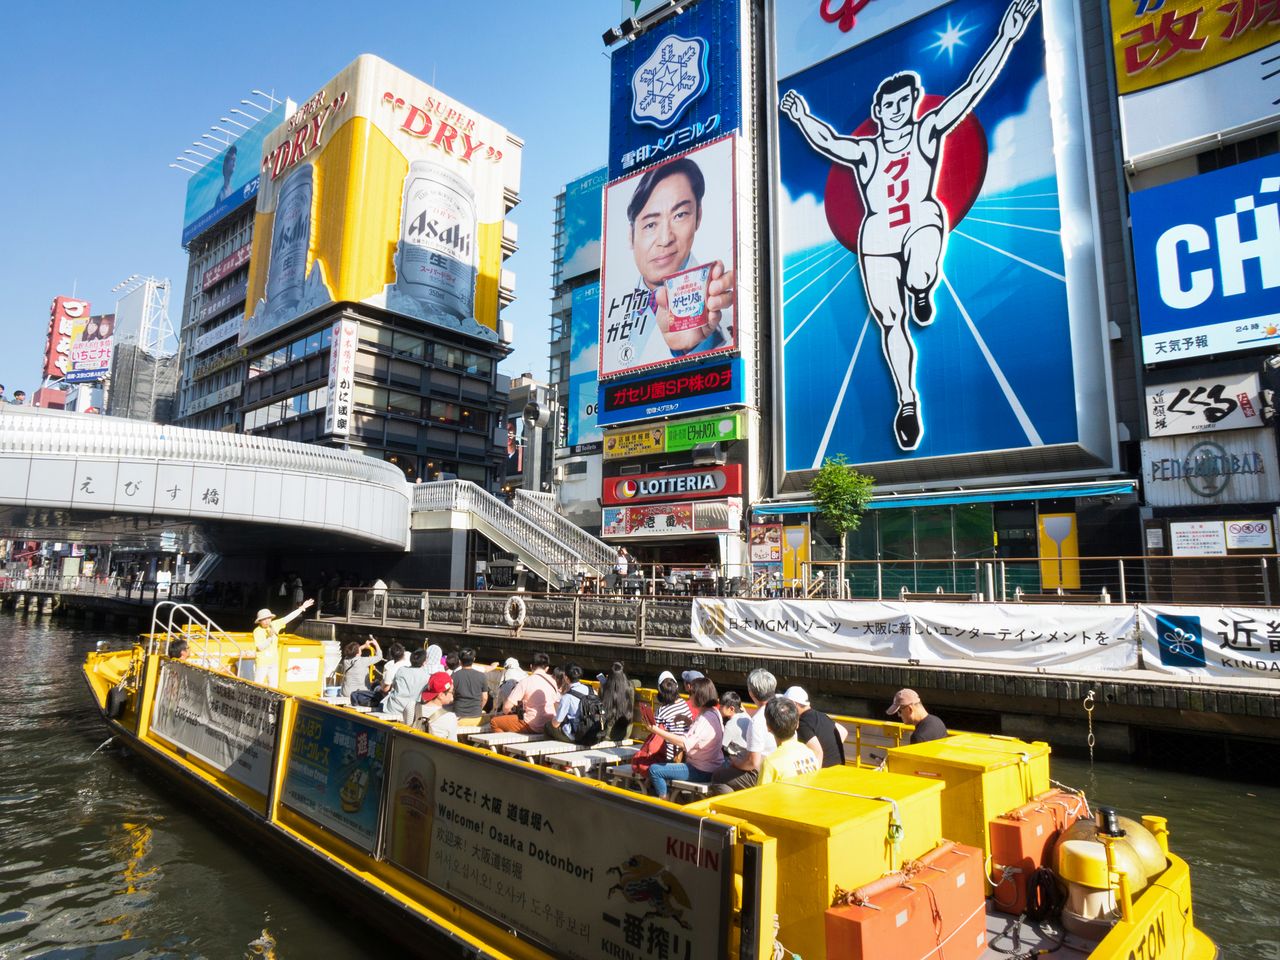 大阪“Minami”最具代表性的风景非戎桥一带莫属，这里的格力高广告牌广为人知。水上观光船也很受欢迎，可以在船上欣赏道顿堀两岸的街景